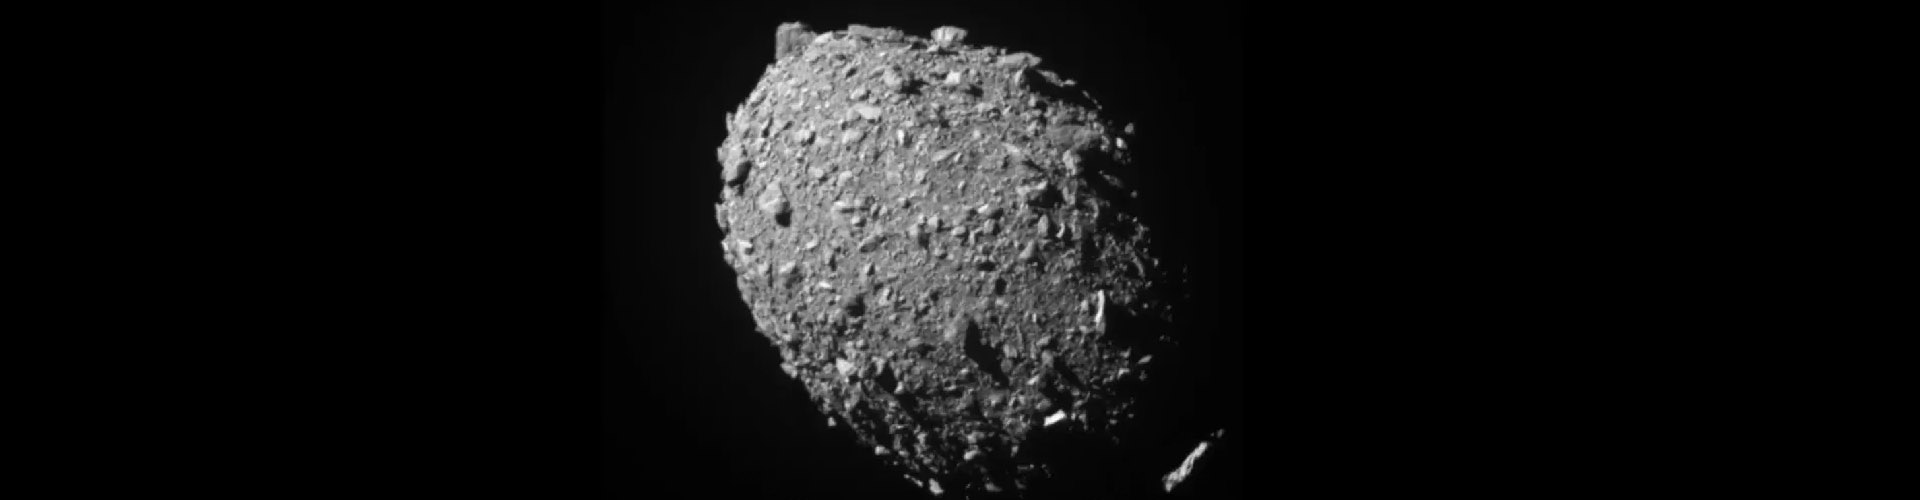 Misión DART de la NASA logra impactar nave con el asteroide Dimorphos